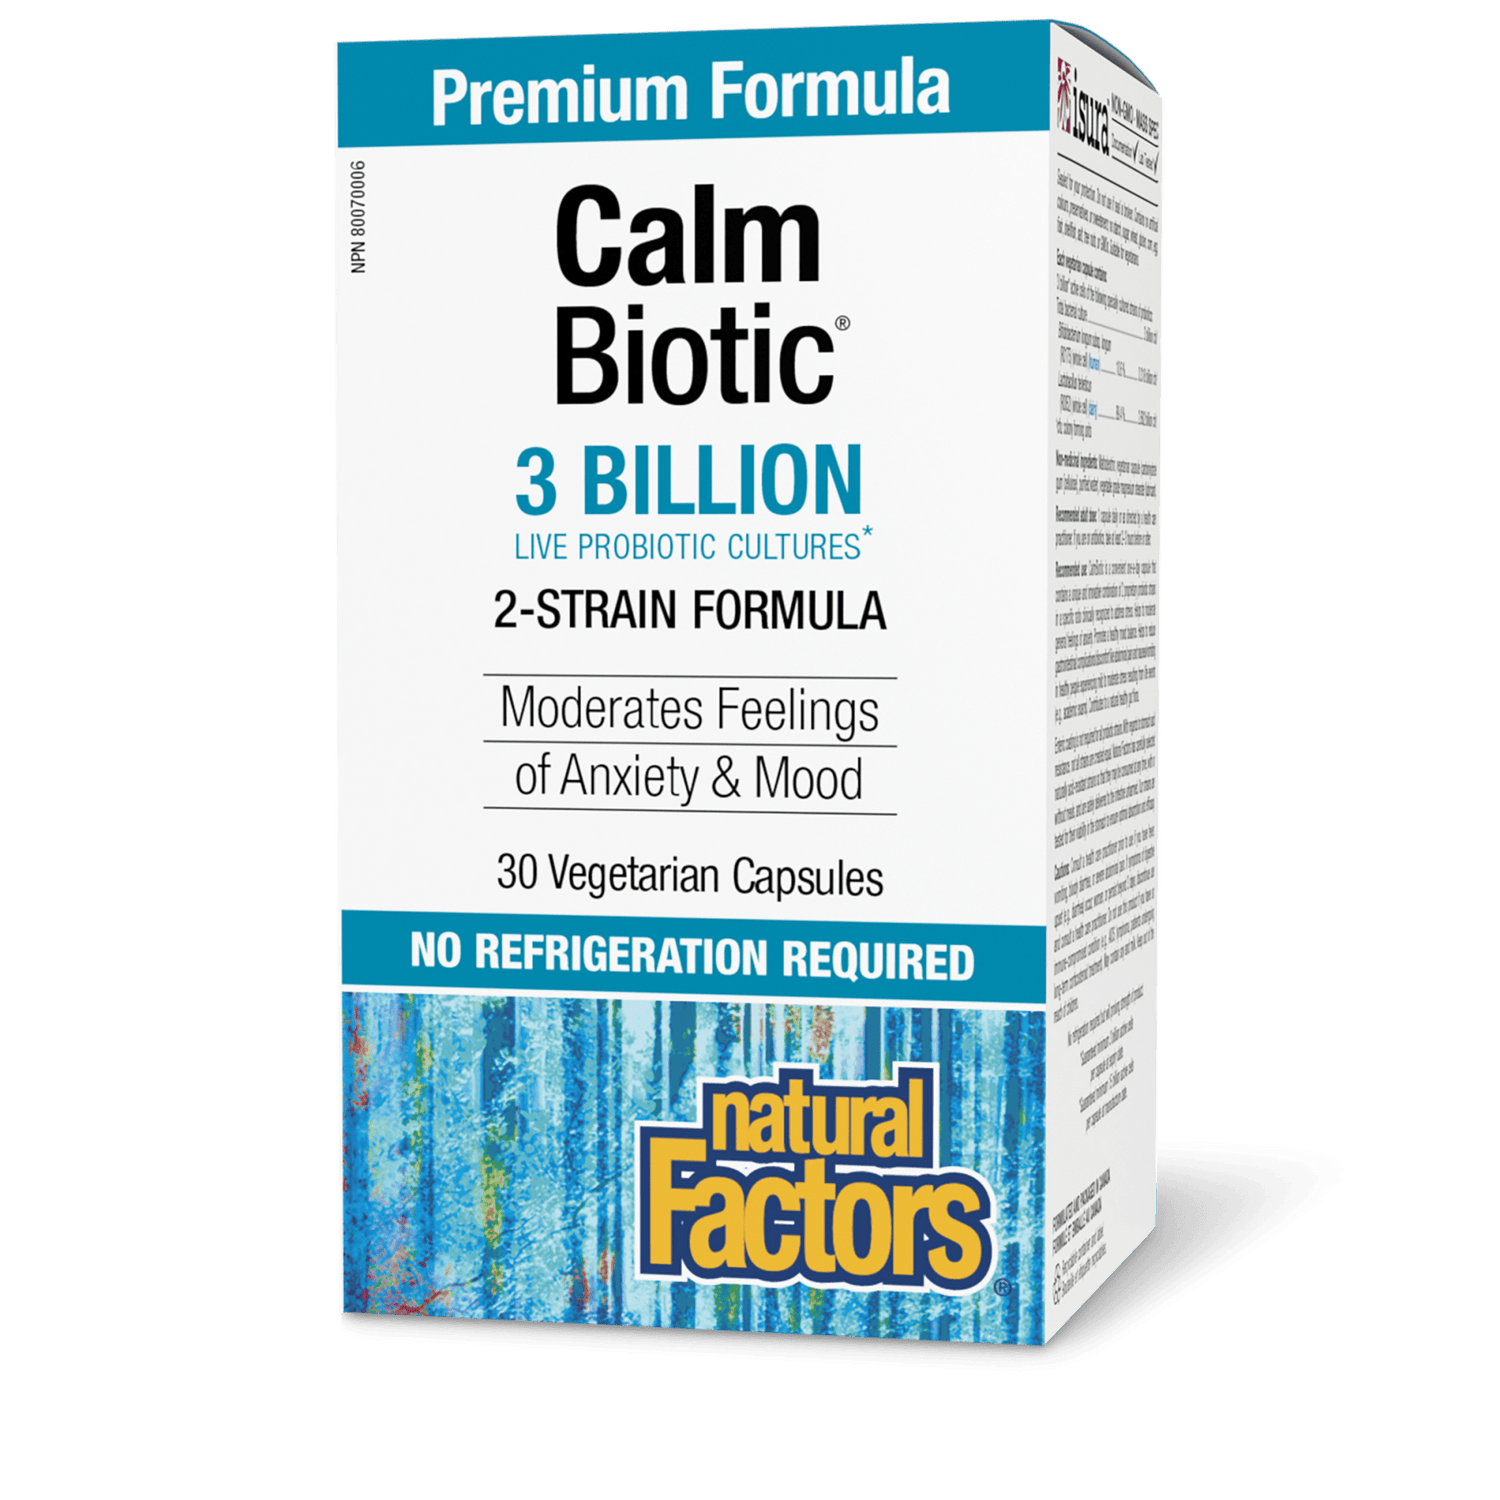 Calm Biotic 3 Billion Live Probiotic Cultures, Natural Factors|v|image|1860